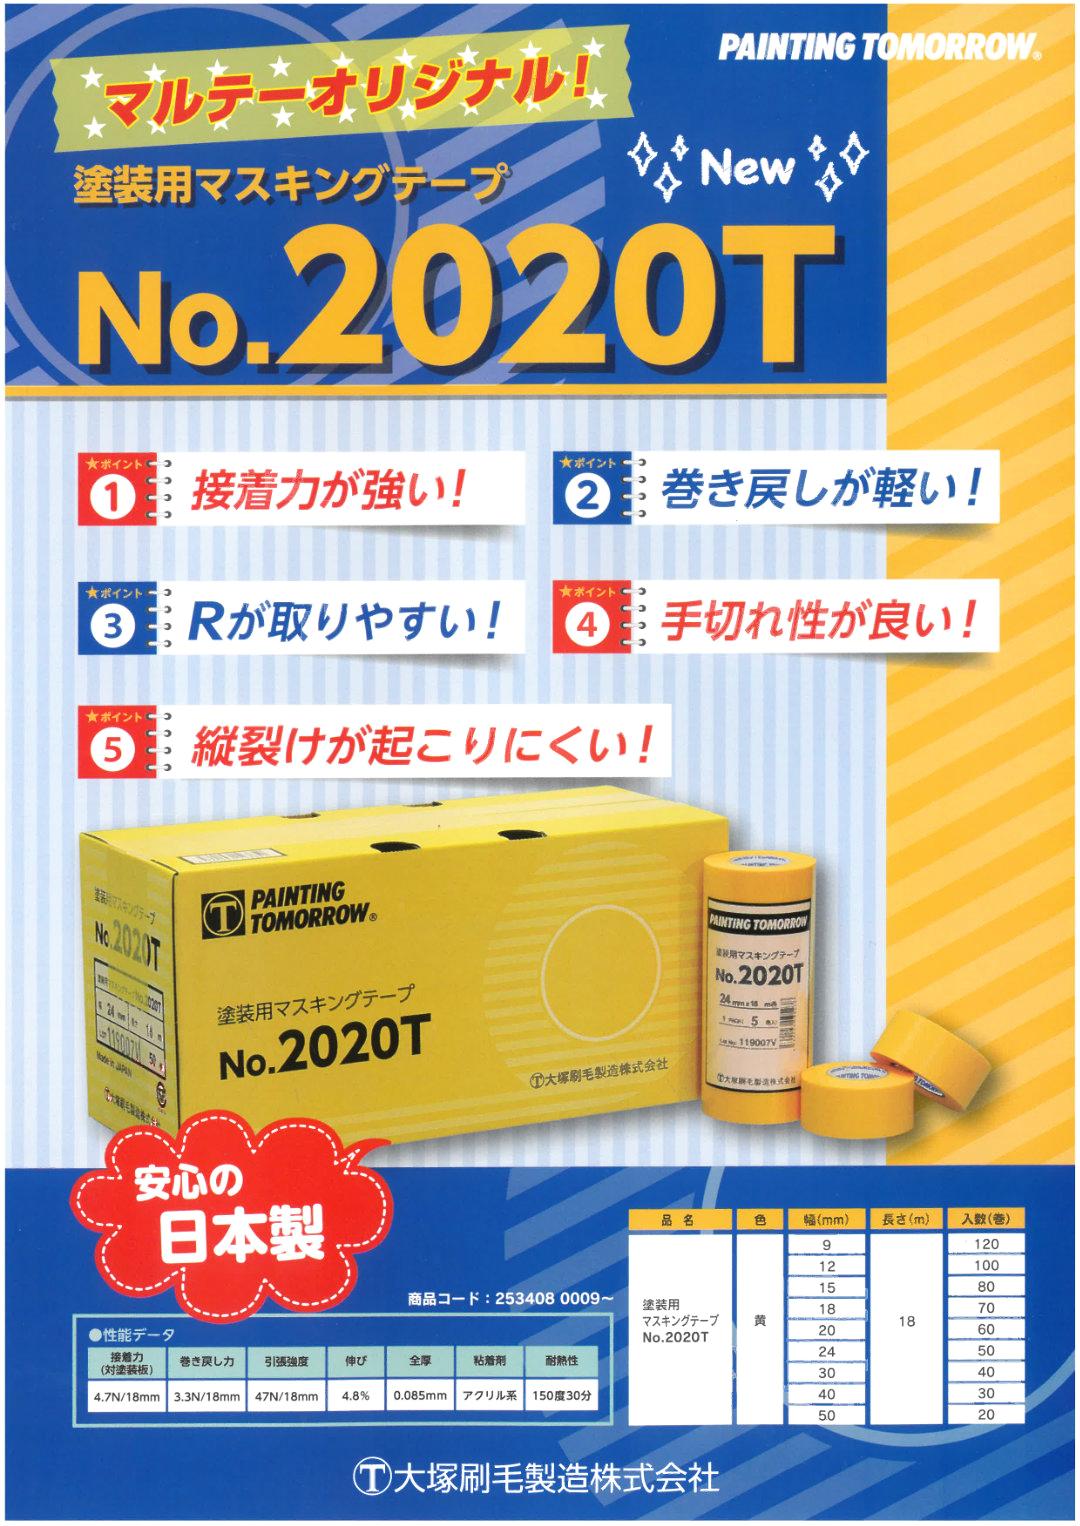 No.2020T 塗装用マスキングテープ 黄 30mm 40巻入り 2箱 セット 【送料無料】画像